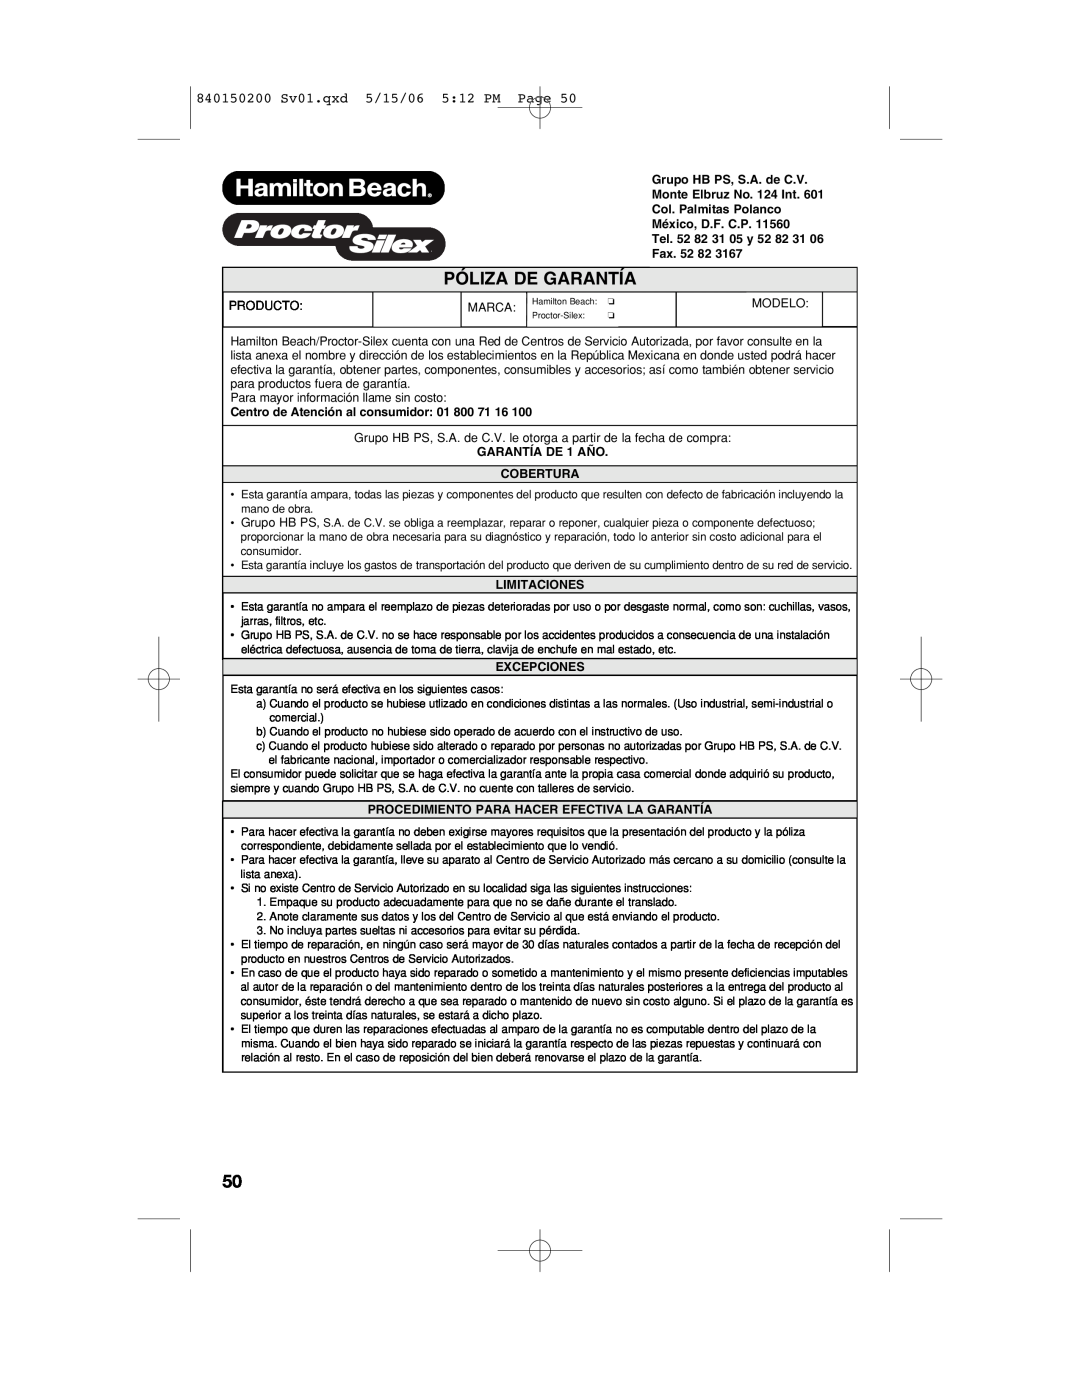 Proctor-Silex manual Póliza De Garantía, 840150200 Sv01.qxd 5/15/06 512 PM Page, Fax, Centro de Atención al consumidor 